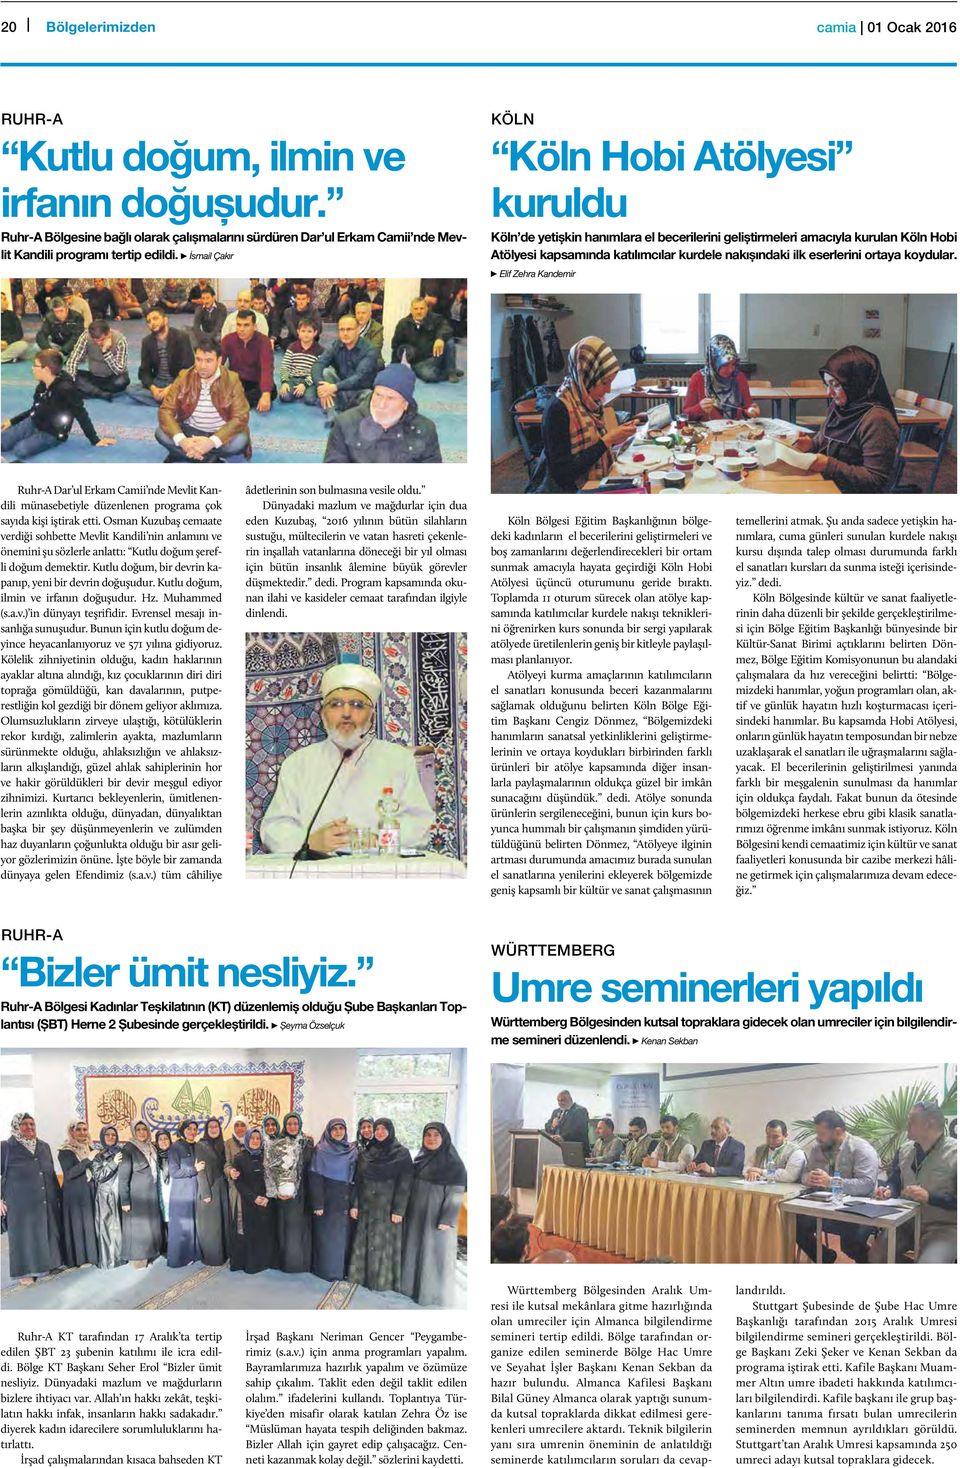 ortaya koydular. Elif Zehra Kandemir Ruhr-A Dar ul Erkam Camii nde Mevlit Kandili münasebetiyle düzenlenen programa çok sayıda kişi iştirak etti.